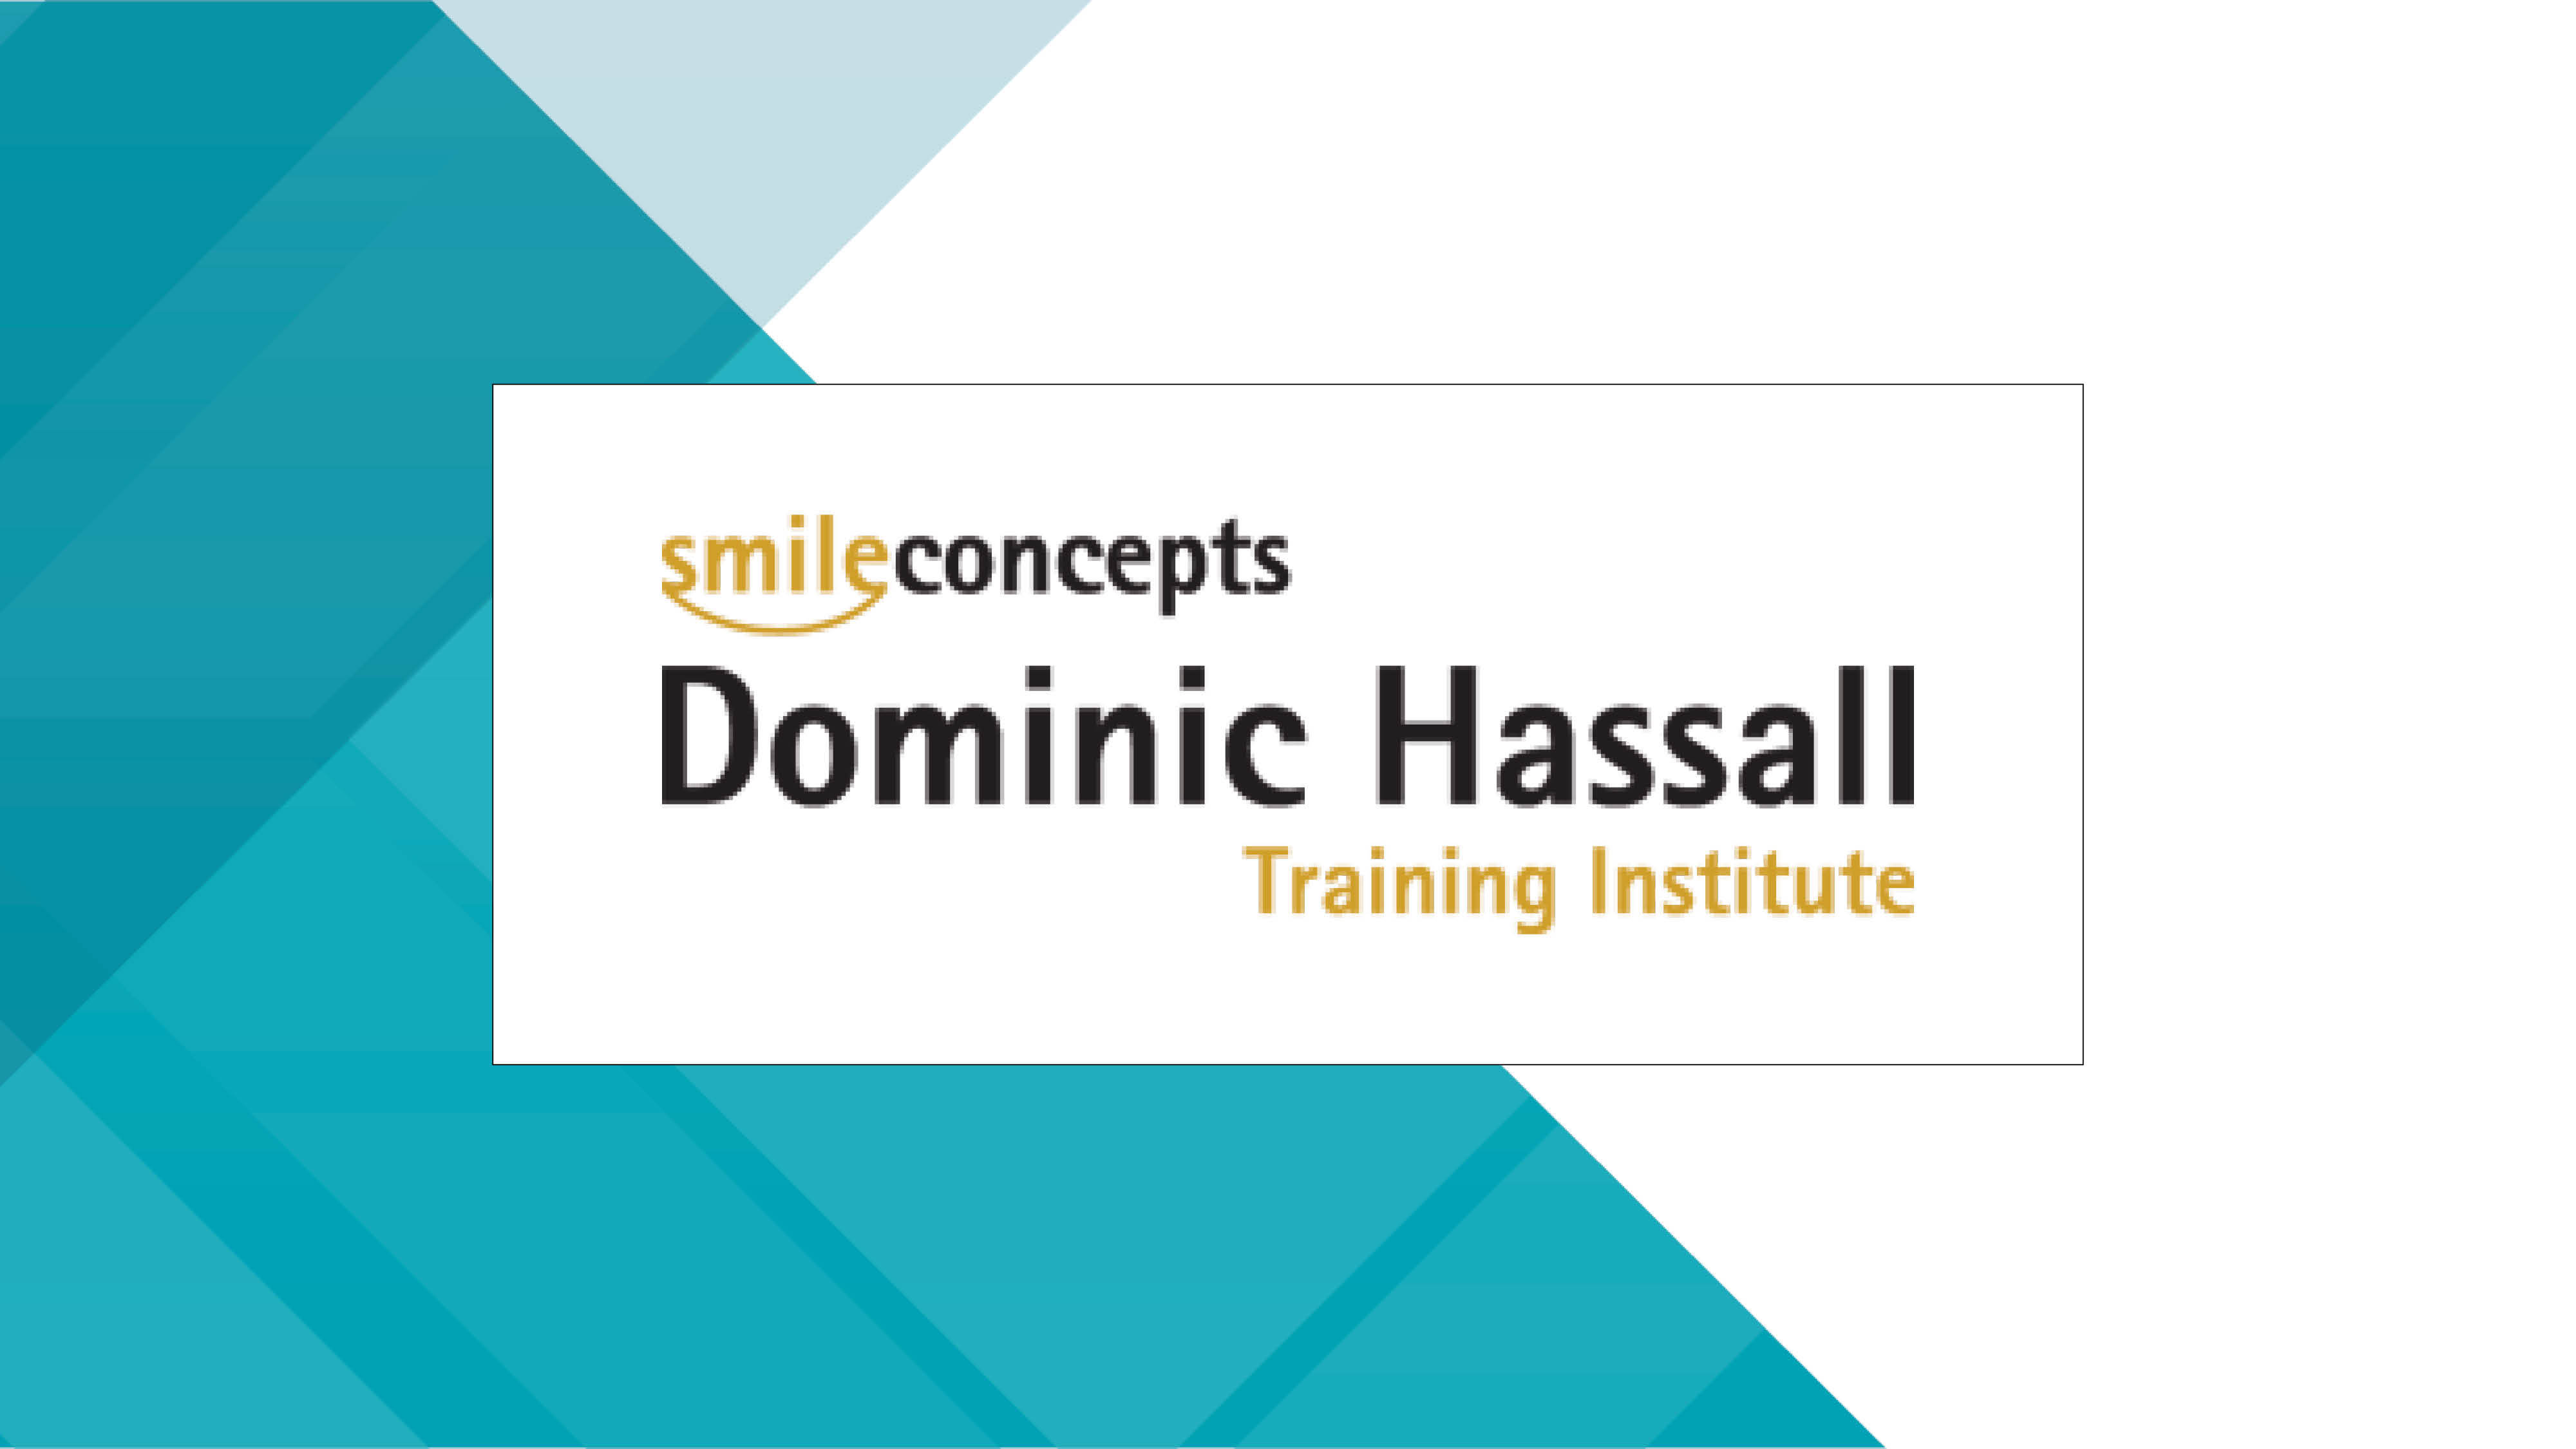 Dominic Hassall